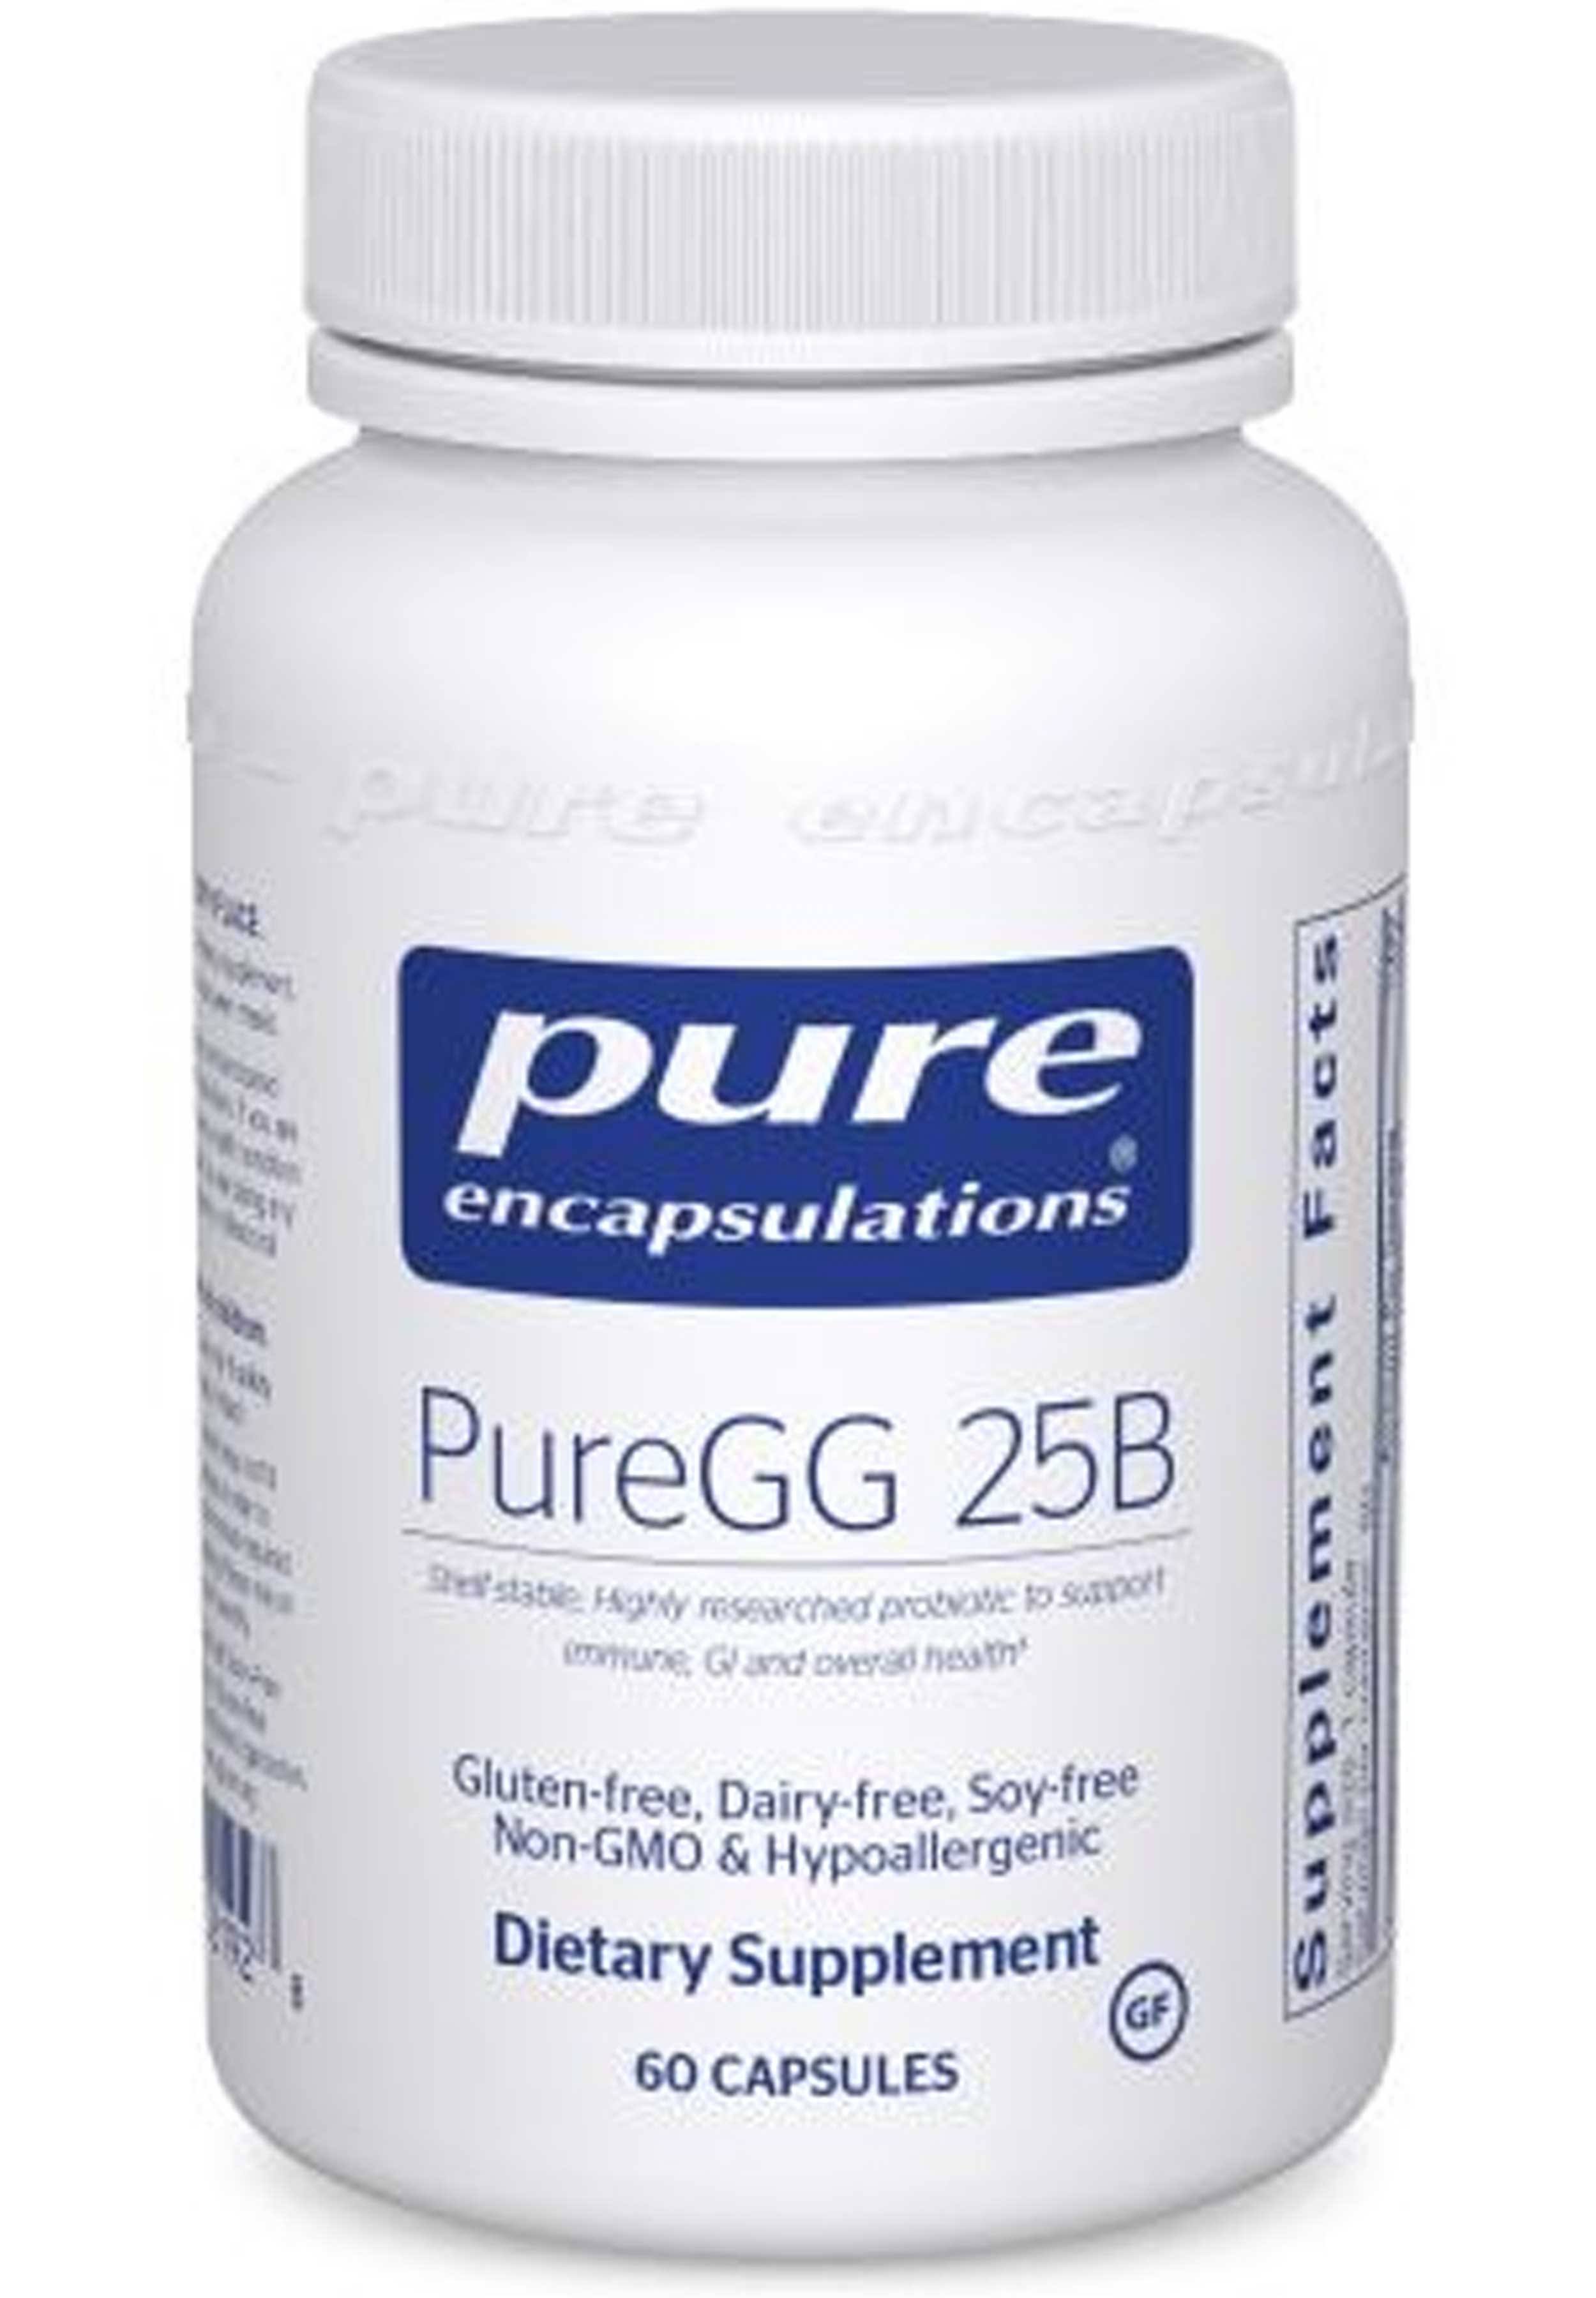 Pure Encapsulations - PureGG 25B - 60 Capsules